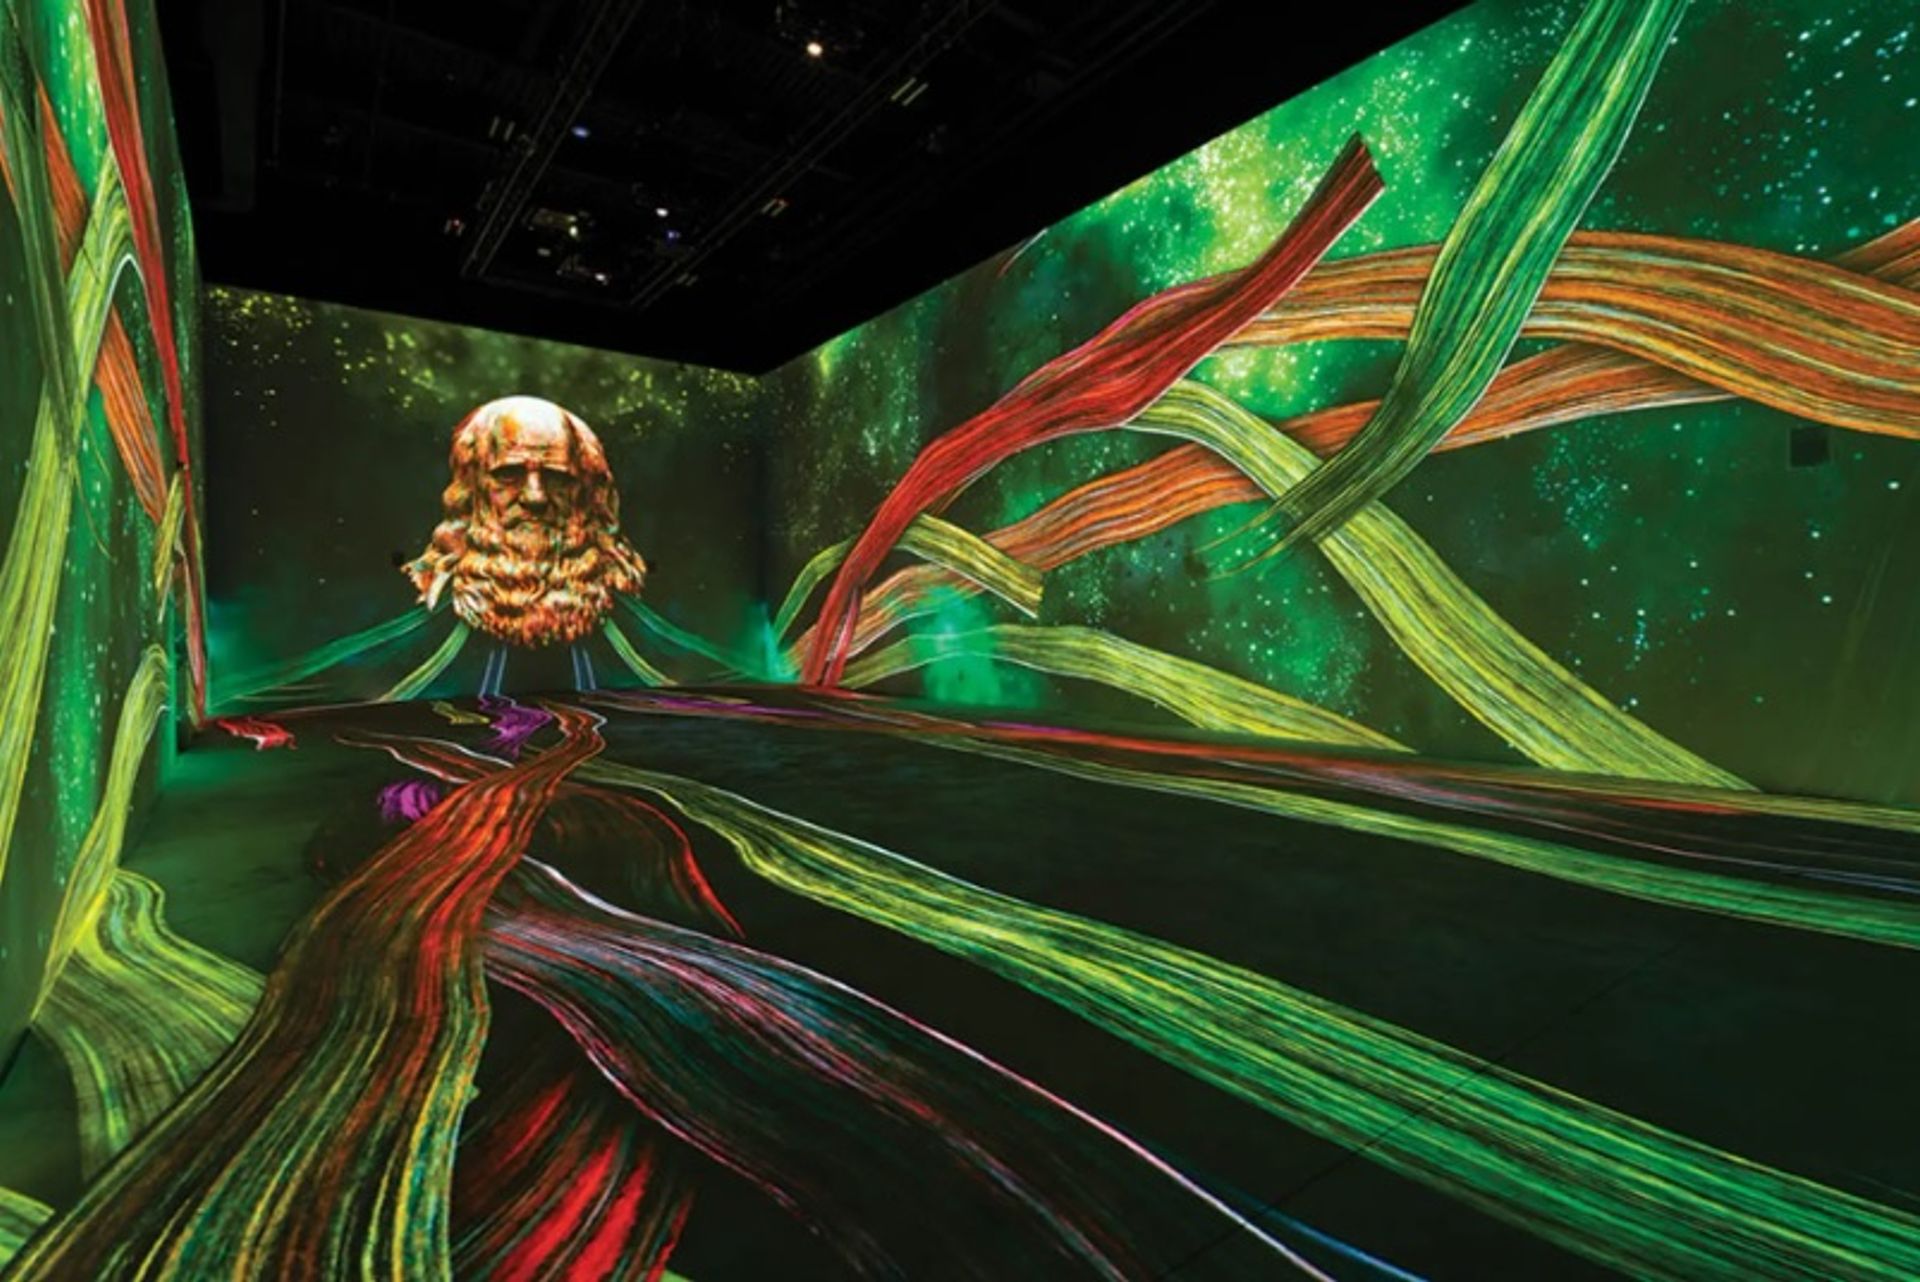 ויוה לה ג'וקונדה: מה לאונרדו היה חושב על התערוכה הדיגיטלית "המבלבלת" המתקיימת בעיר החטאים

Levi Elyson © 501 Studios, ARS